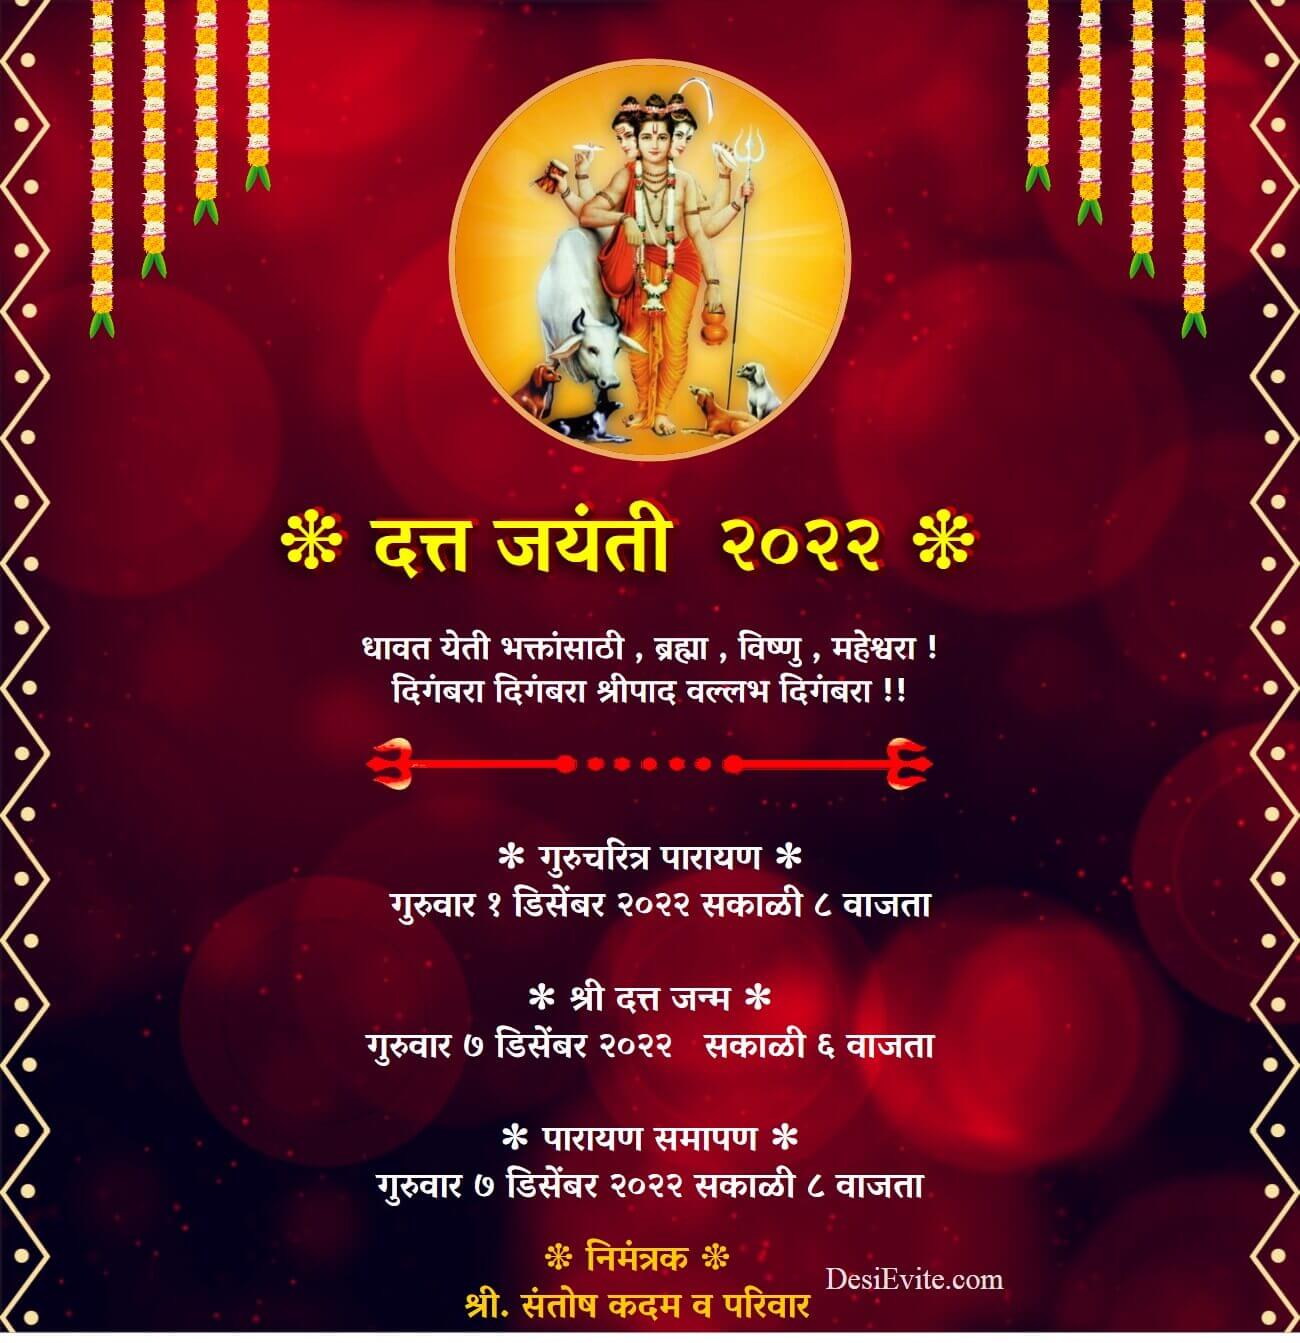 datta jayanti gurucharitra parayan invitation card 61 